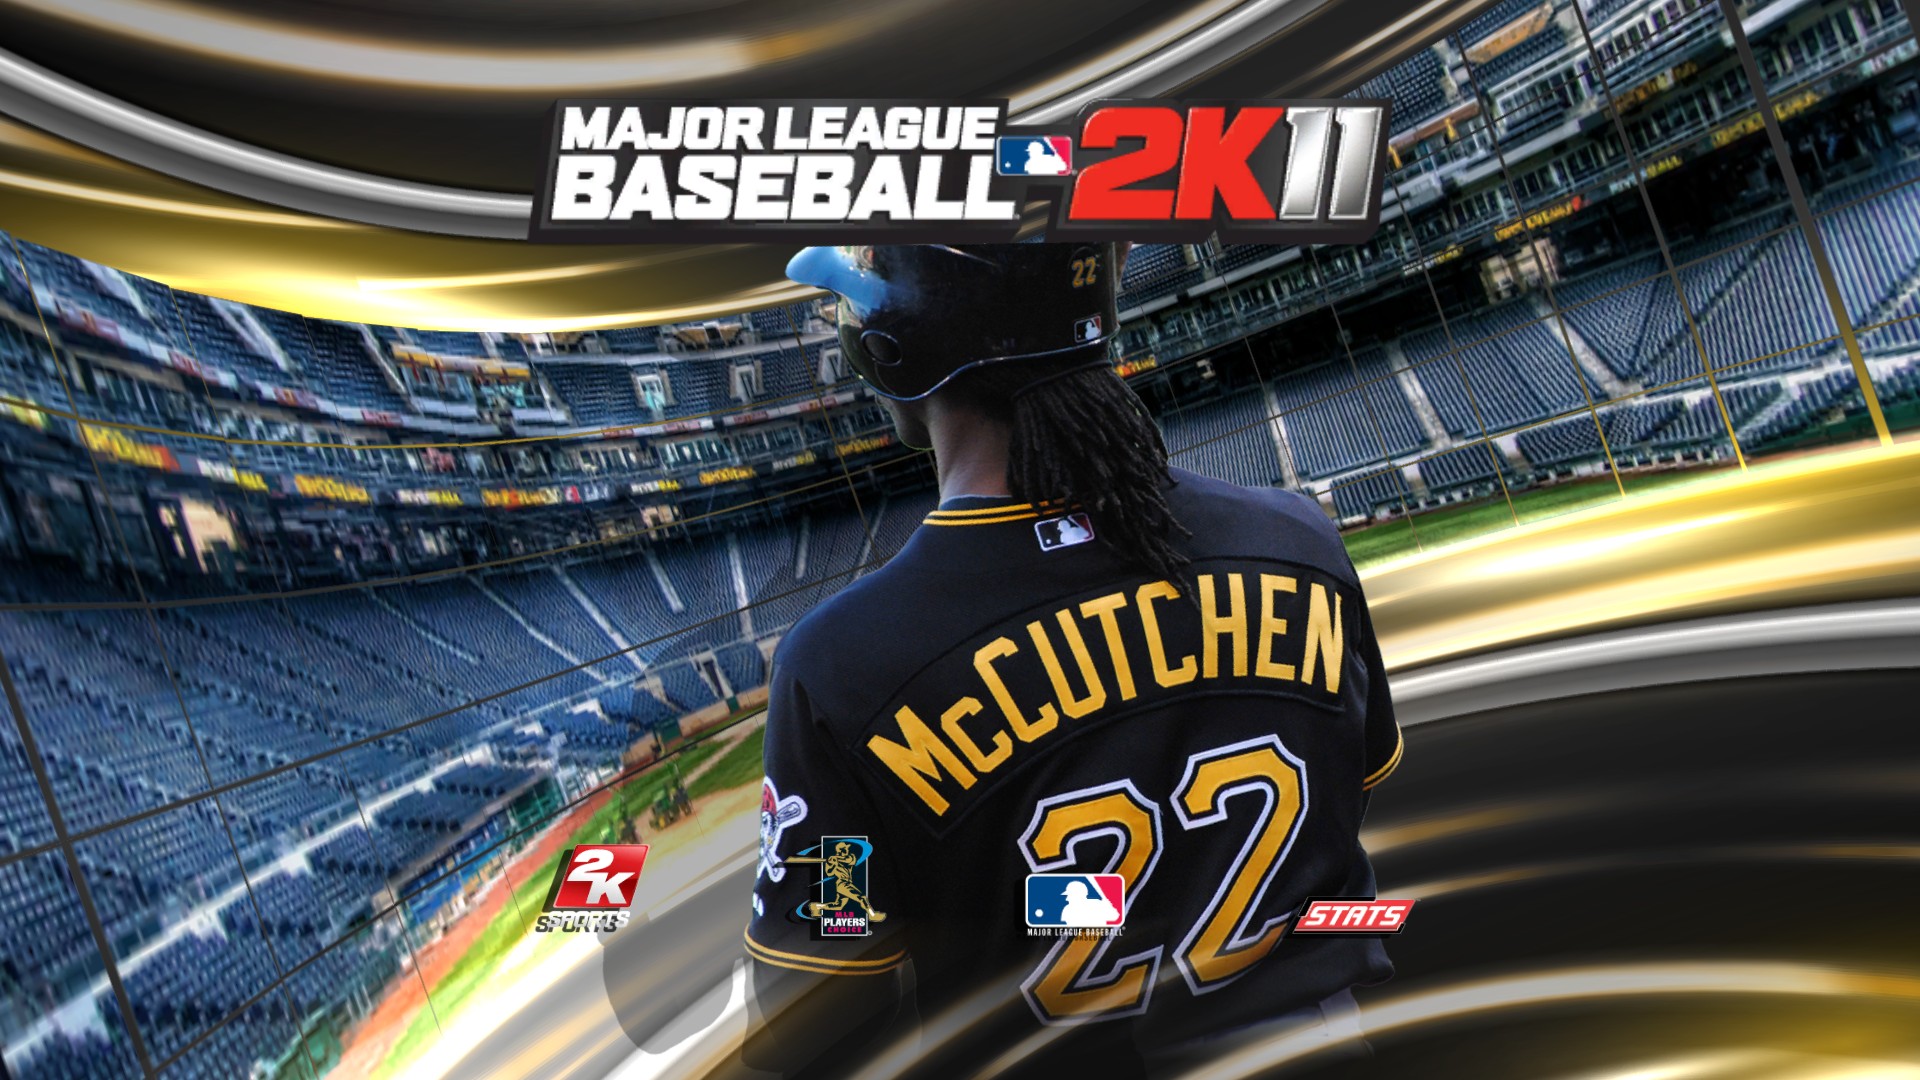 Hình nền Major League Baseball 2K11 HD: Bạn là một fan cuồng nhiệt của bóng chày và trò chơi Major League Baseball 2K11? Hãy tải ngay hình nền HD của trò chơi này để trang trí cho máy tính của mình và thể hiện đam mê của mình.